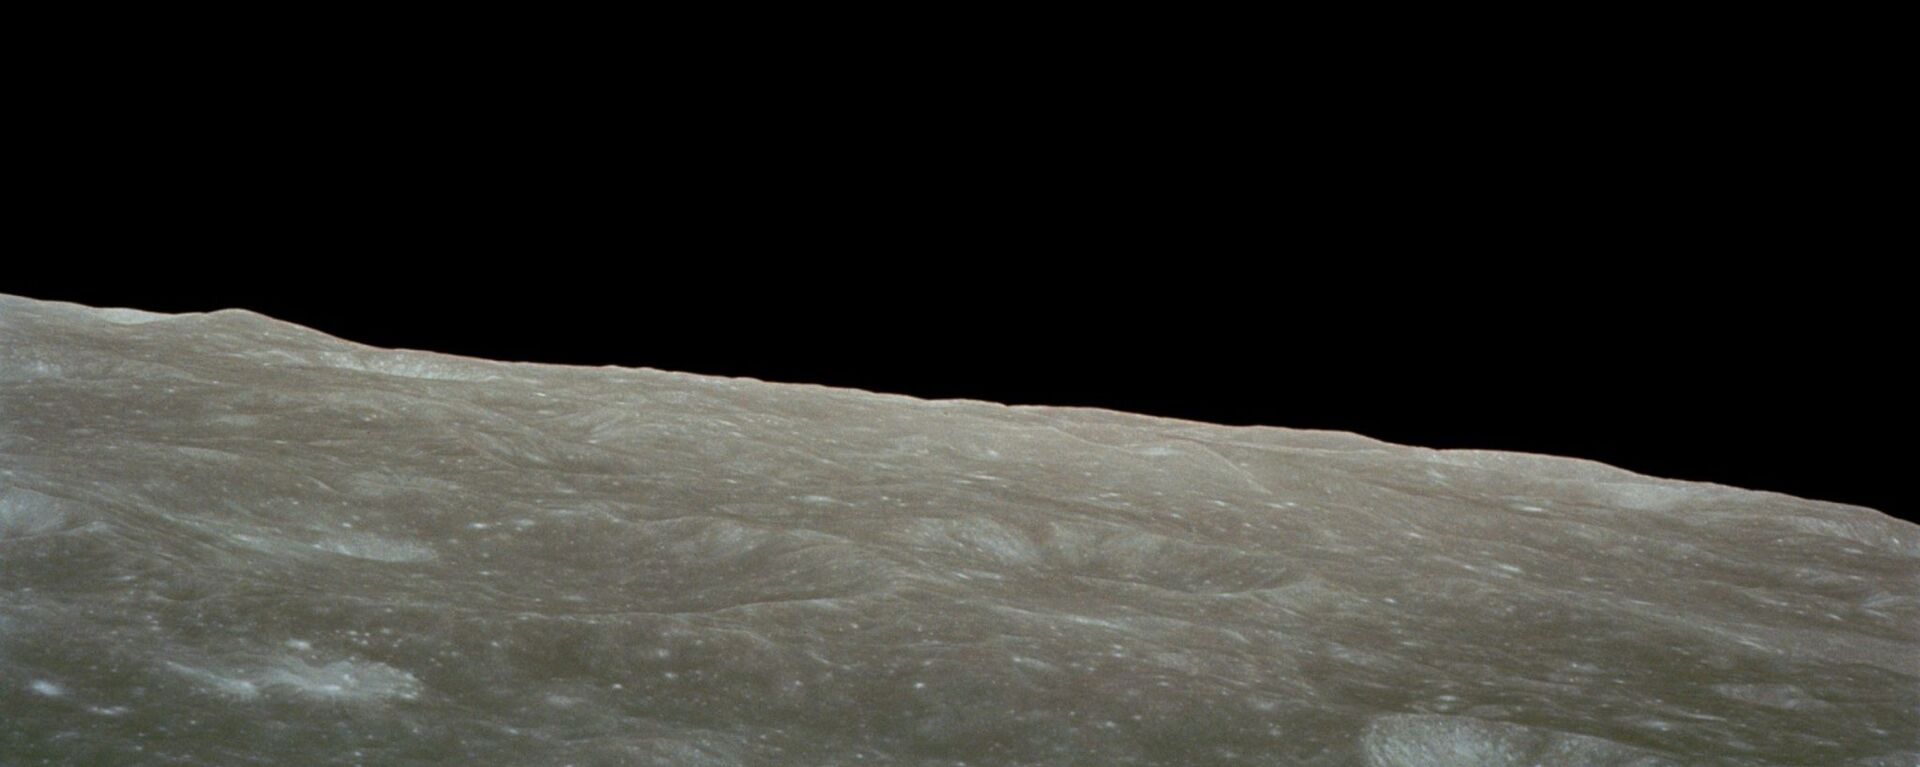 صورة للأرض من القمر  - سبوتنيك عربي, 1920, 12.11.2021